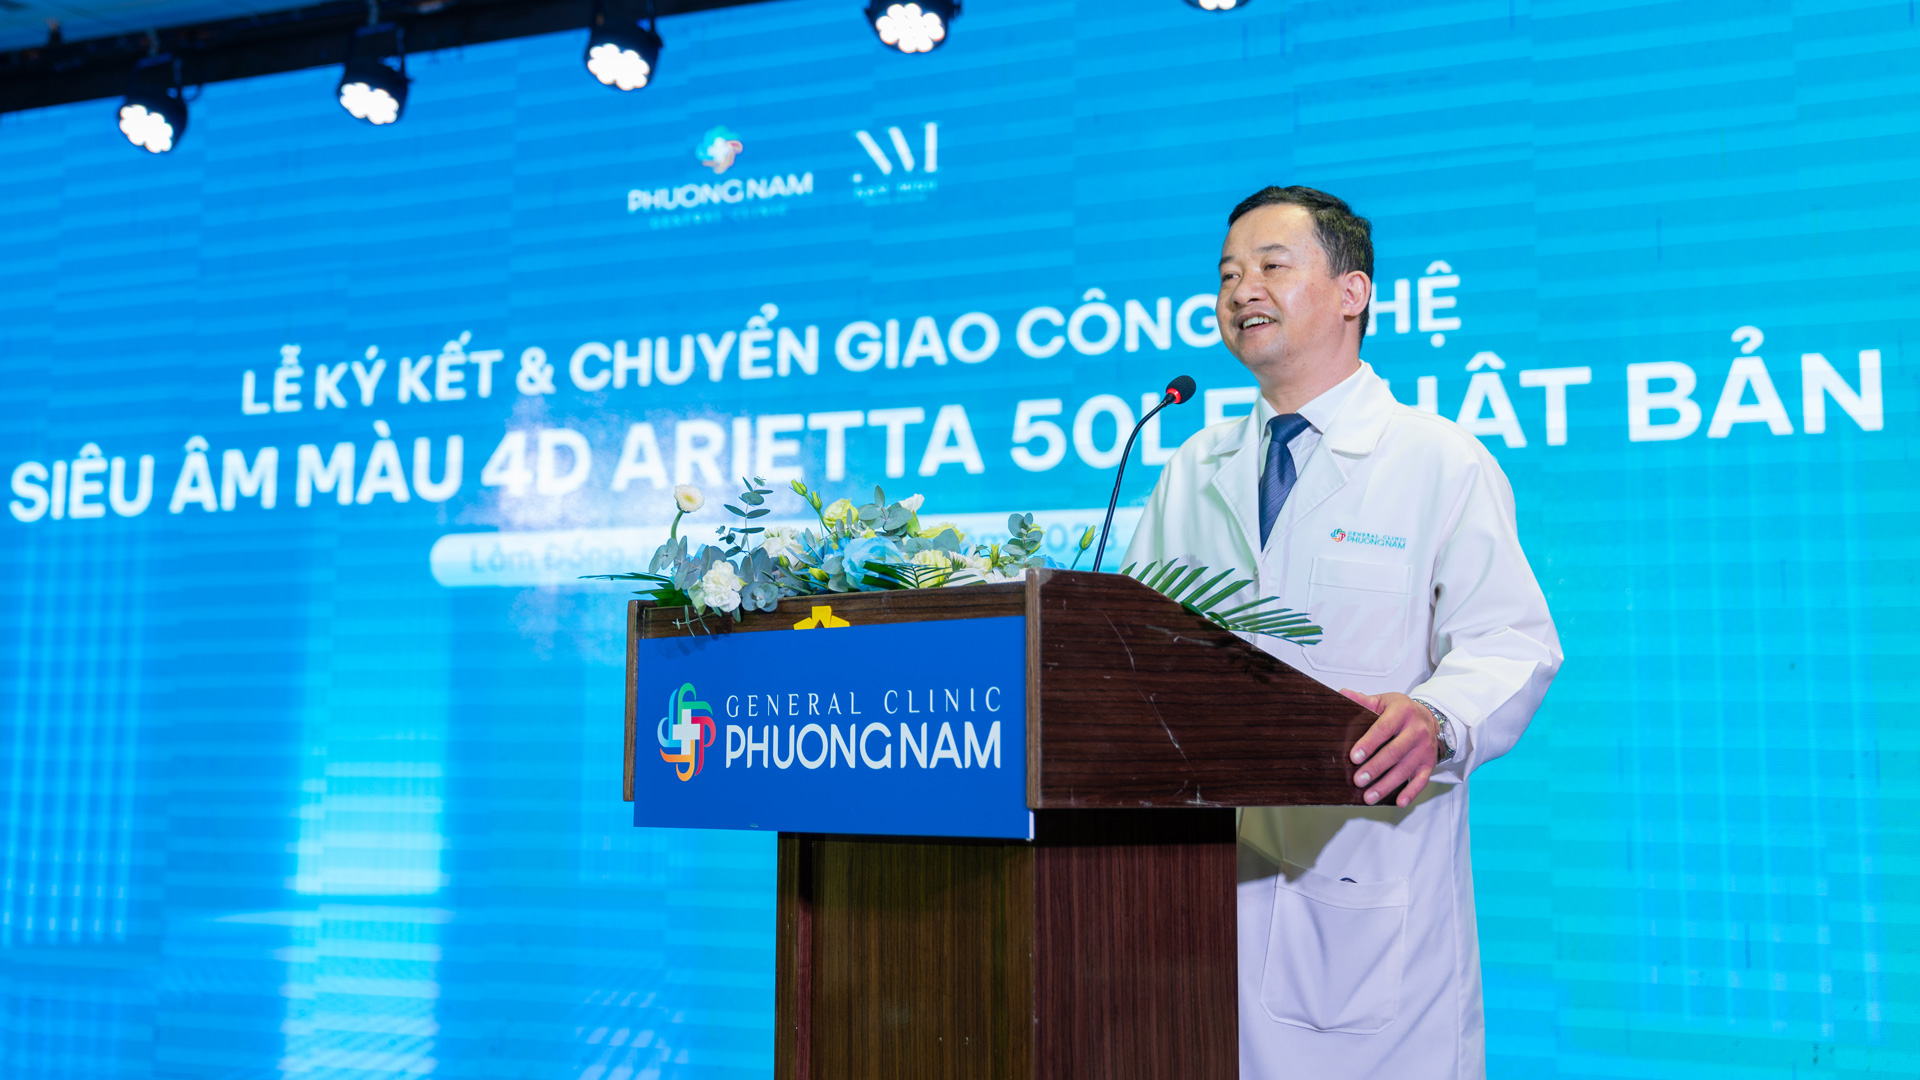 Bác sĩ Nguyễn Văn Khánh - Đại diện Phòng khám Đa khoa Phương Nam chia sẻ mục tiêu khi ứng dụng công nghệ siêu âm hiện đại từ Nhật Bản vào quá trình khám chữa bệnh